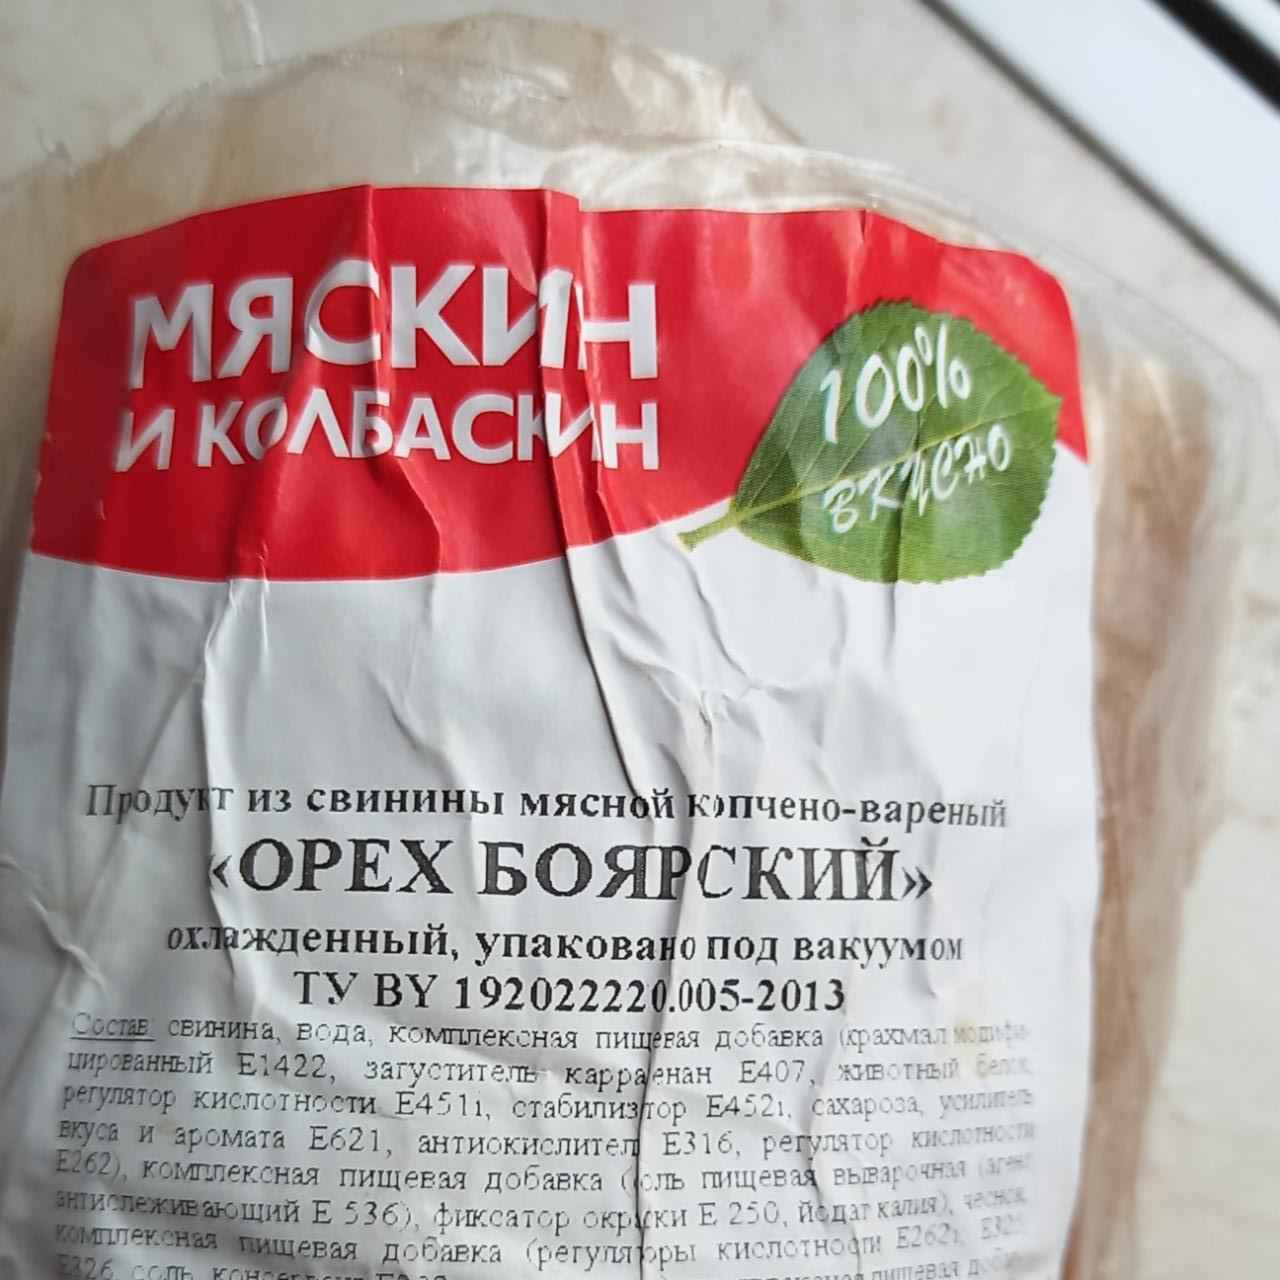 Фото - продукт из свинины мясной копчёно-варёный Орех Боярский Мяскин и колбаскин